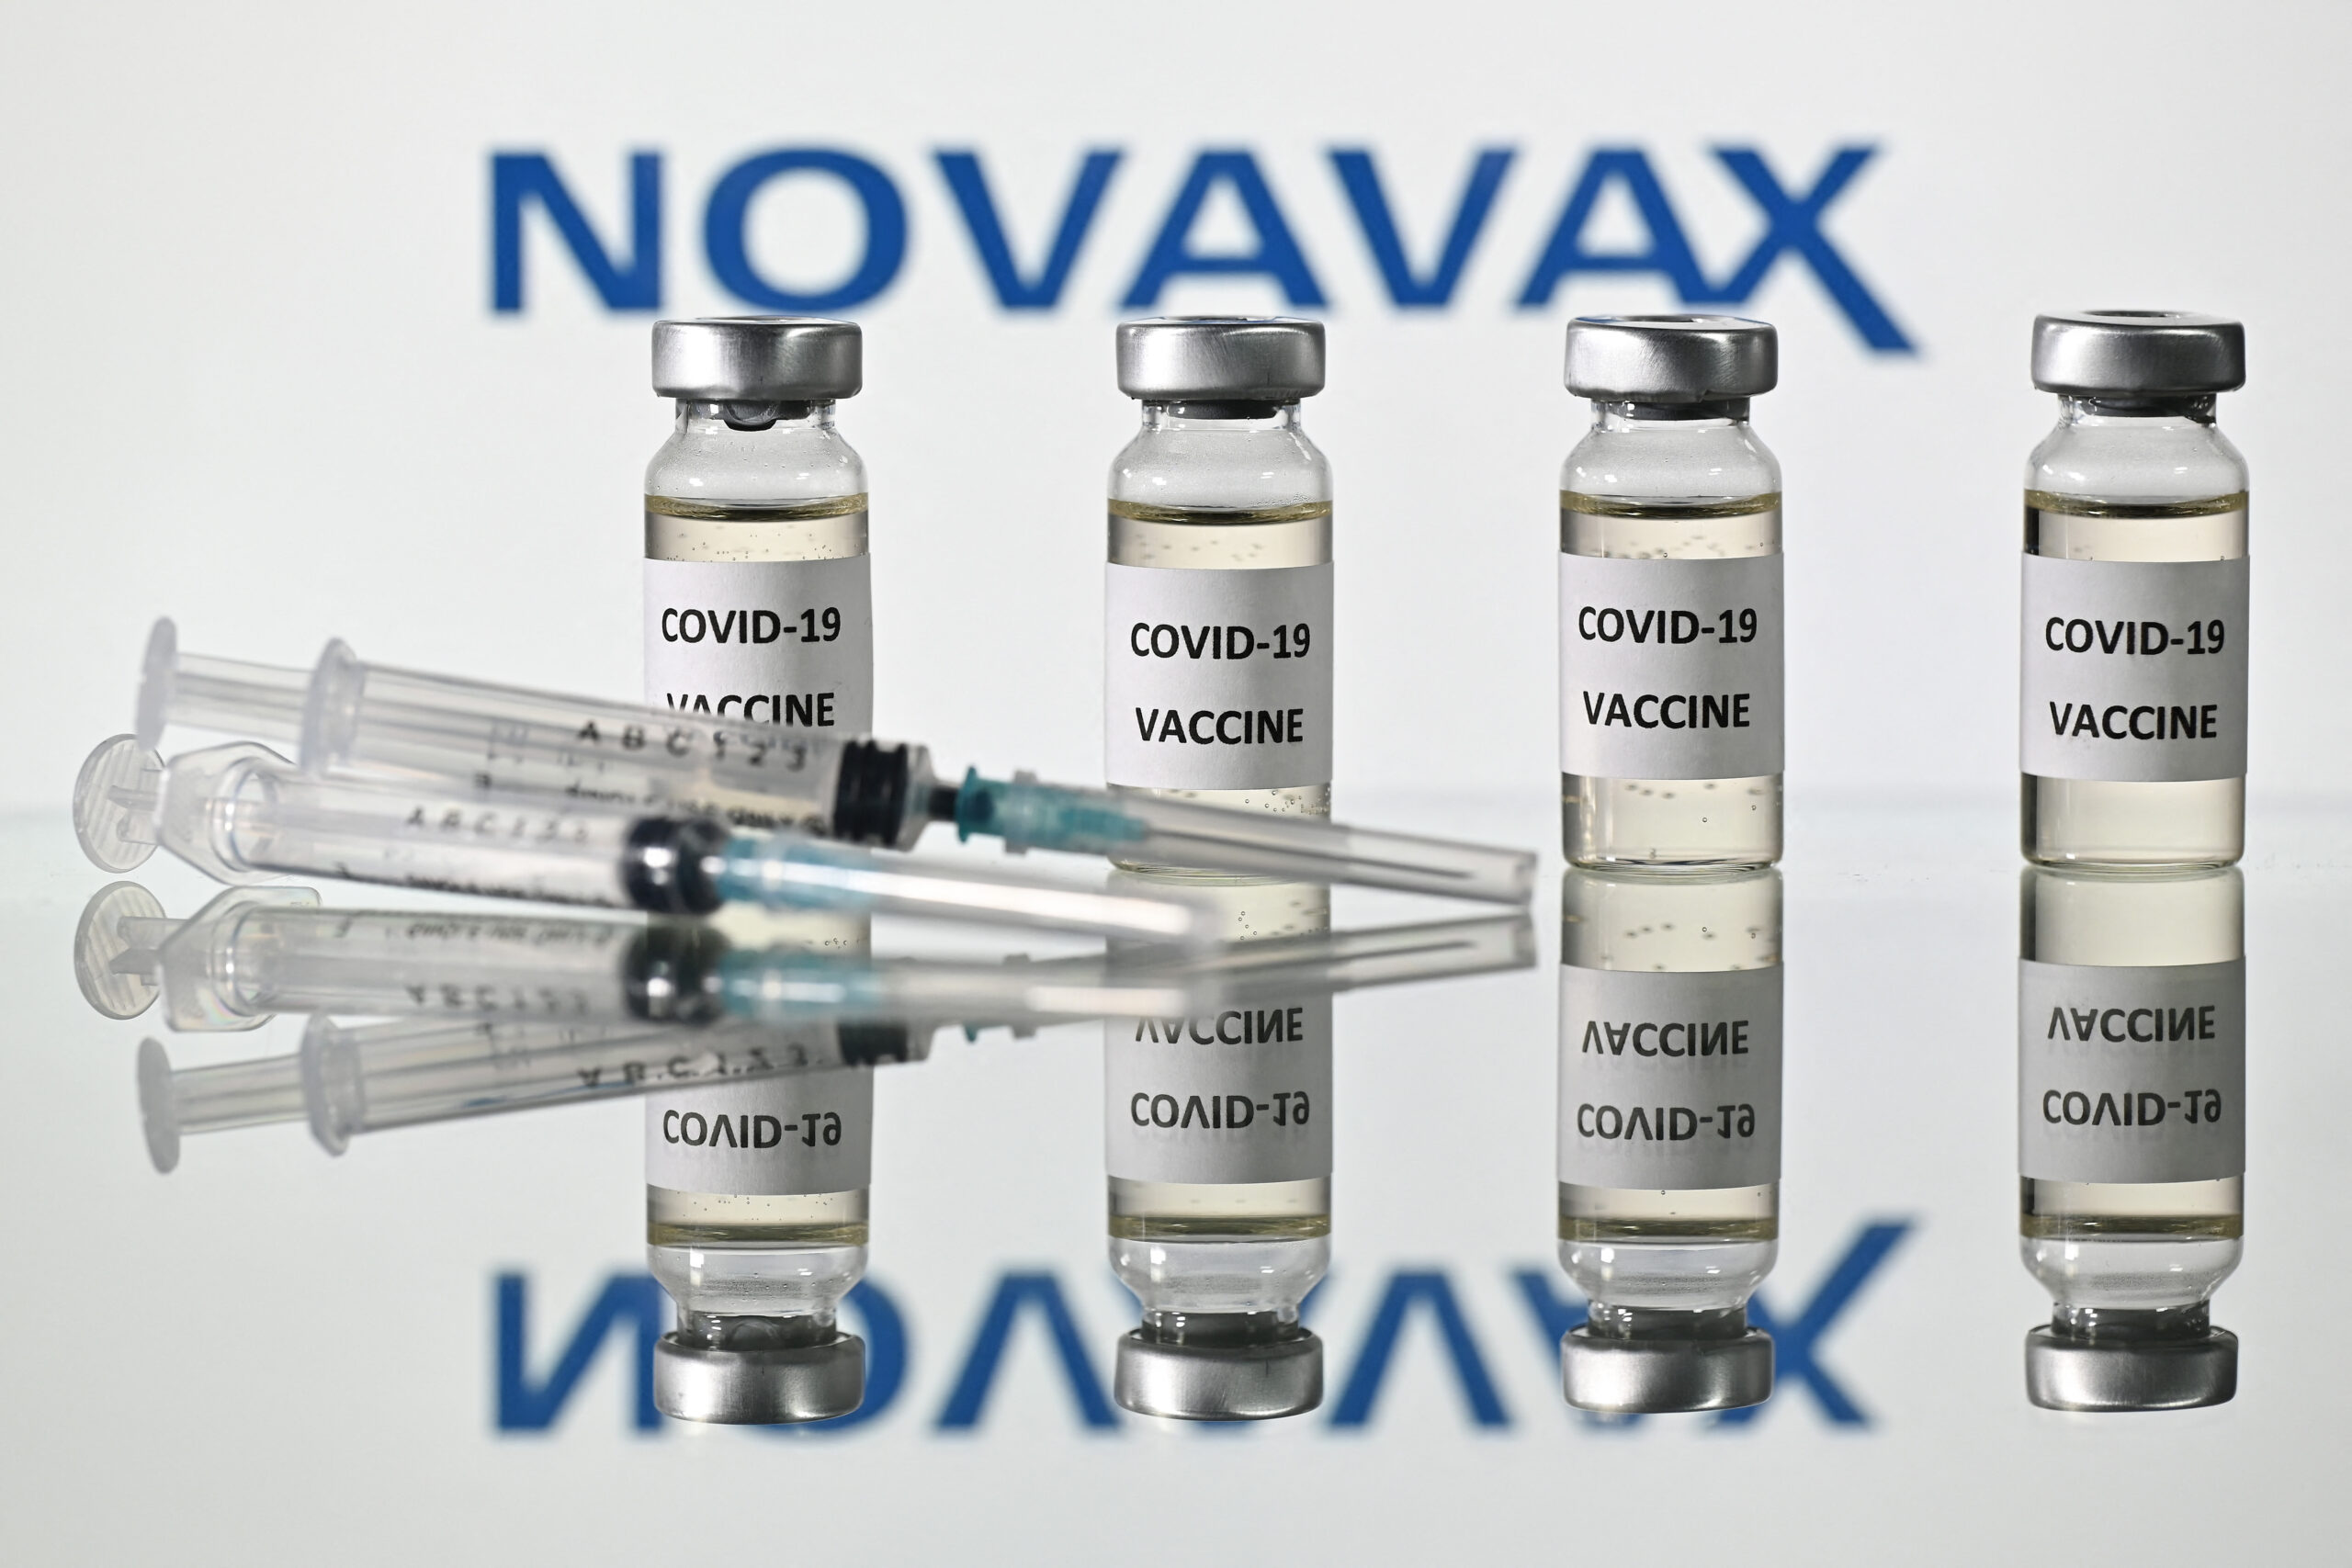 ญี่ปุ่น สั่งซื้อวัคซีนโนวาแวกซ์ มากถึง 150 ล้านโดส – ต่างประเทศ